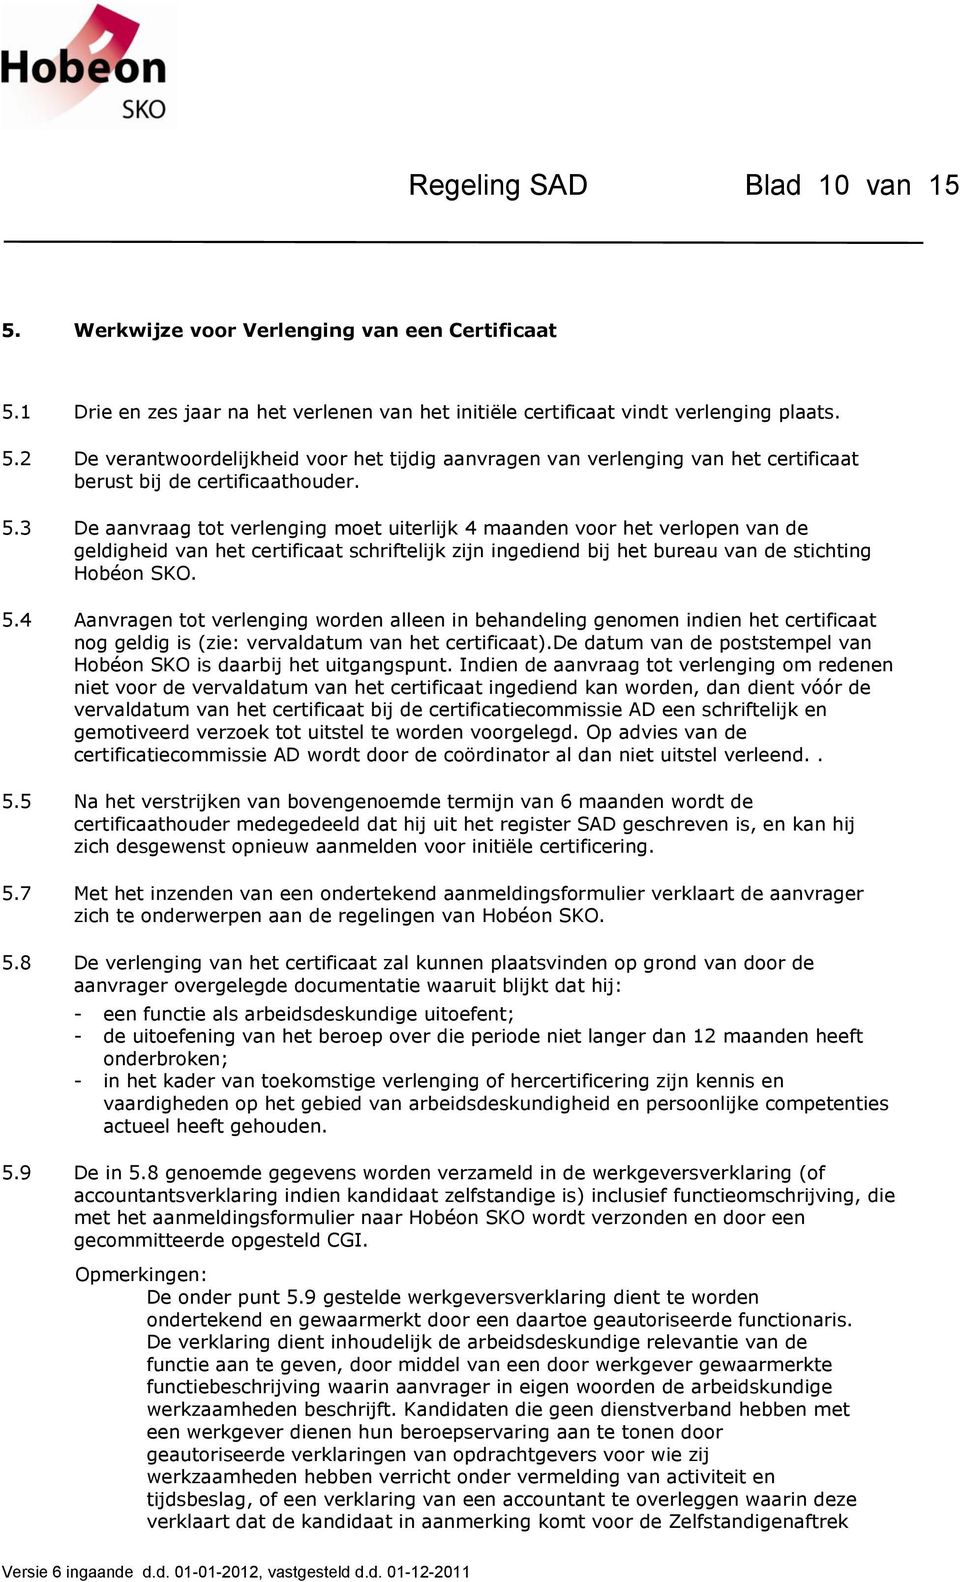 4 Aanvragen tot verlenging worden alleen in behandeling genomen indien het certificaat nog geldig is (zie: vervaldatum van het certificaat).